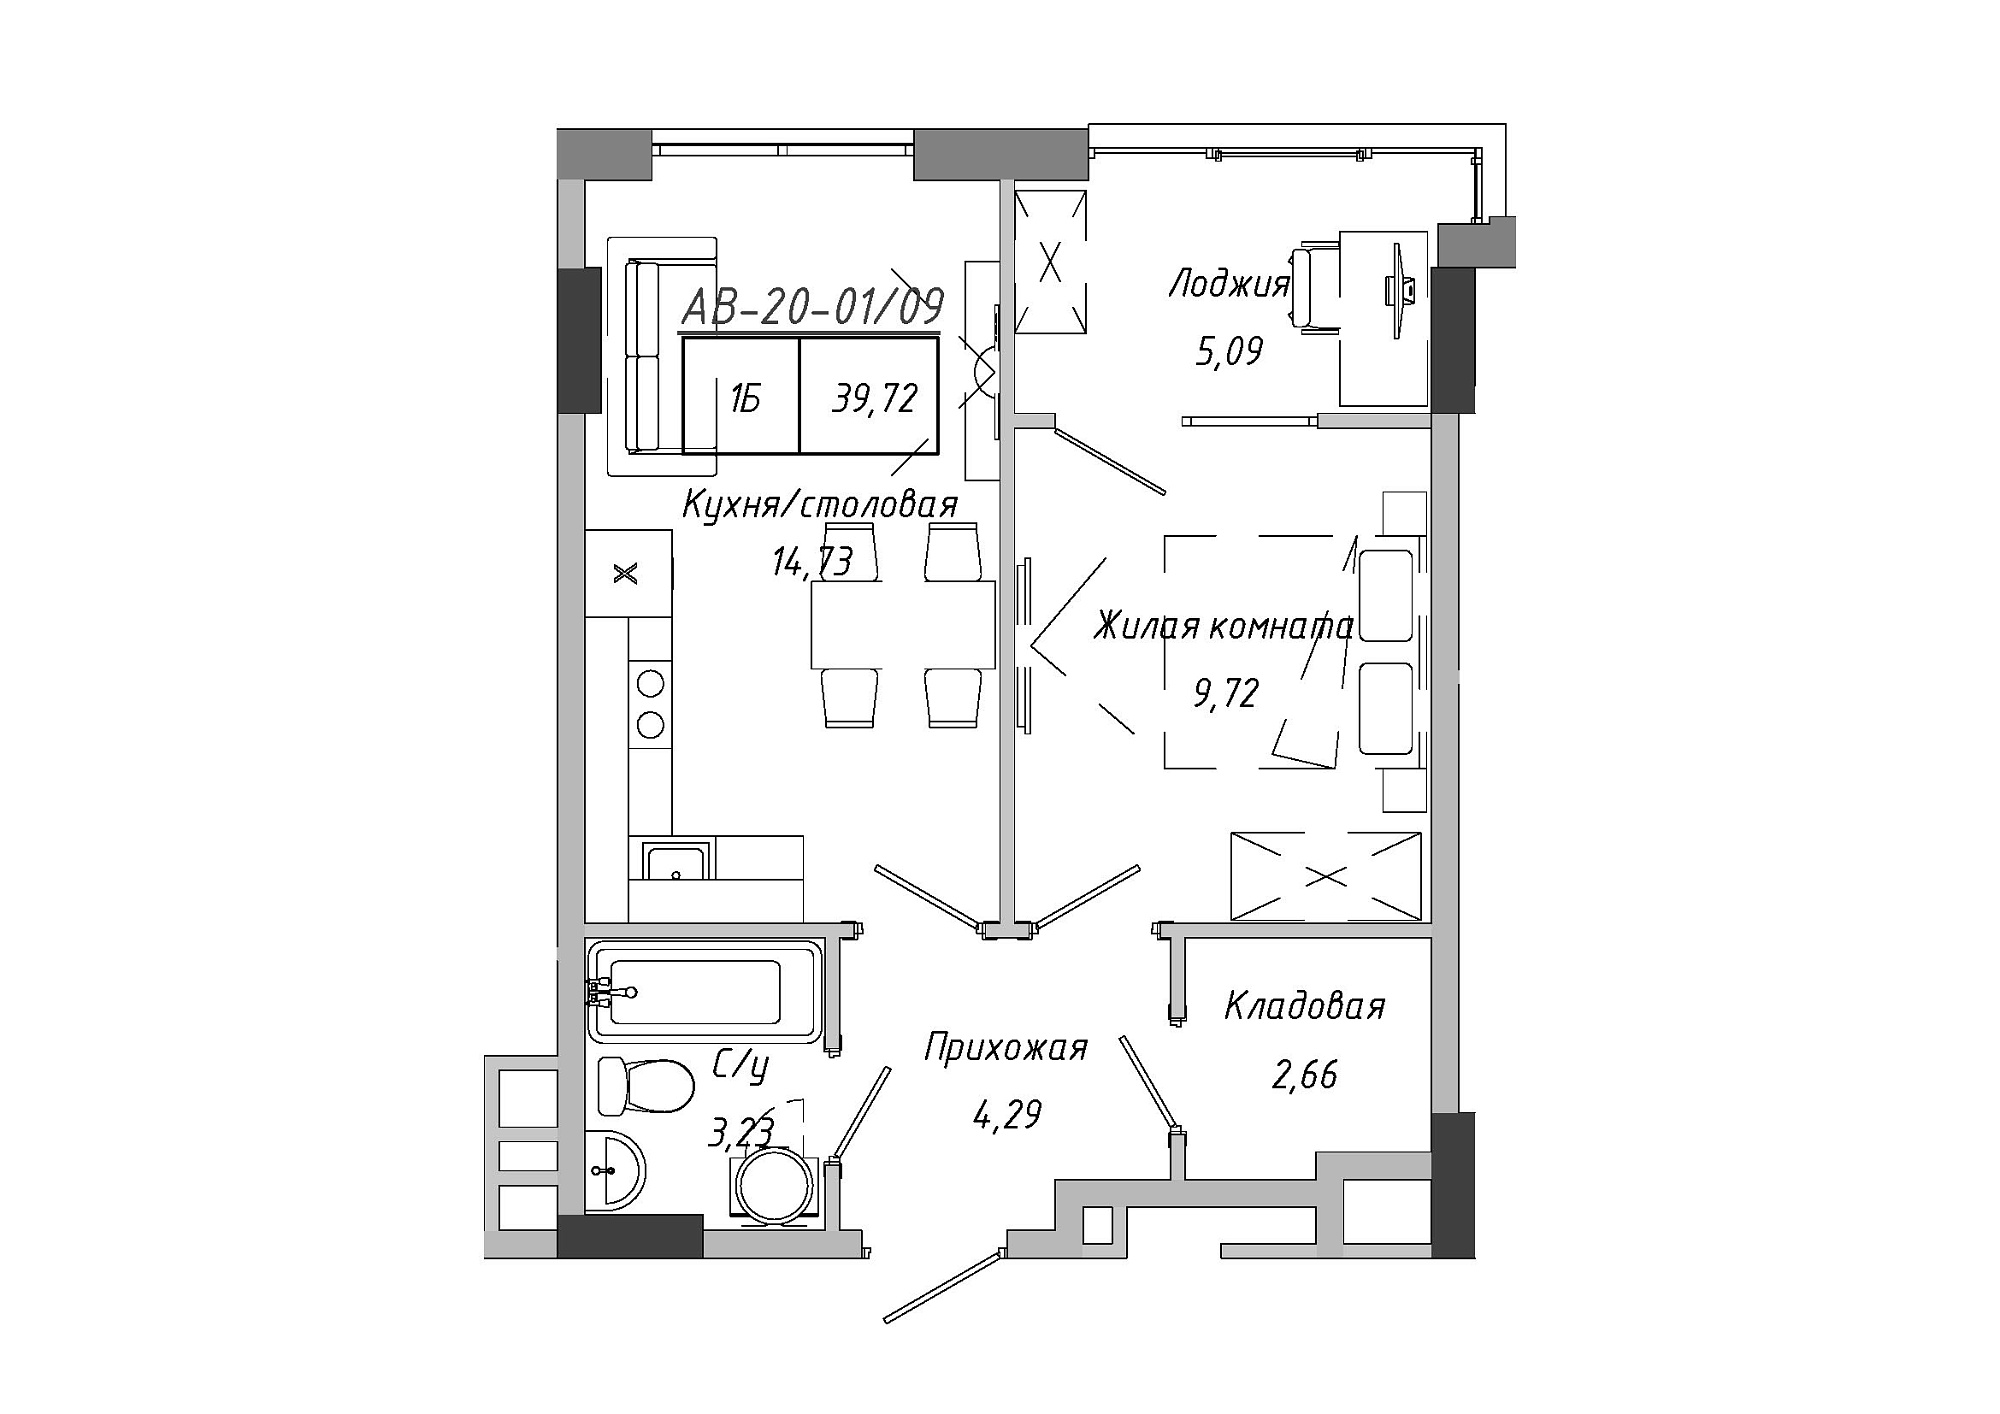 Планировка 1-к квартира площей 39.72м2, AB-20-01/00009.